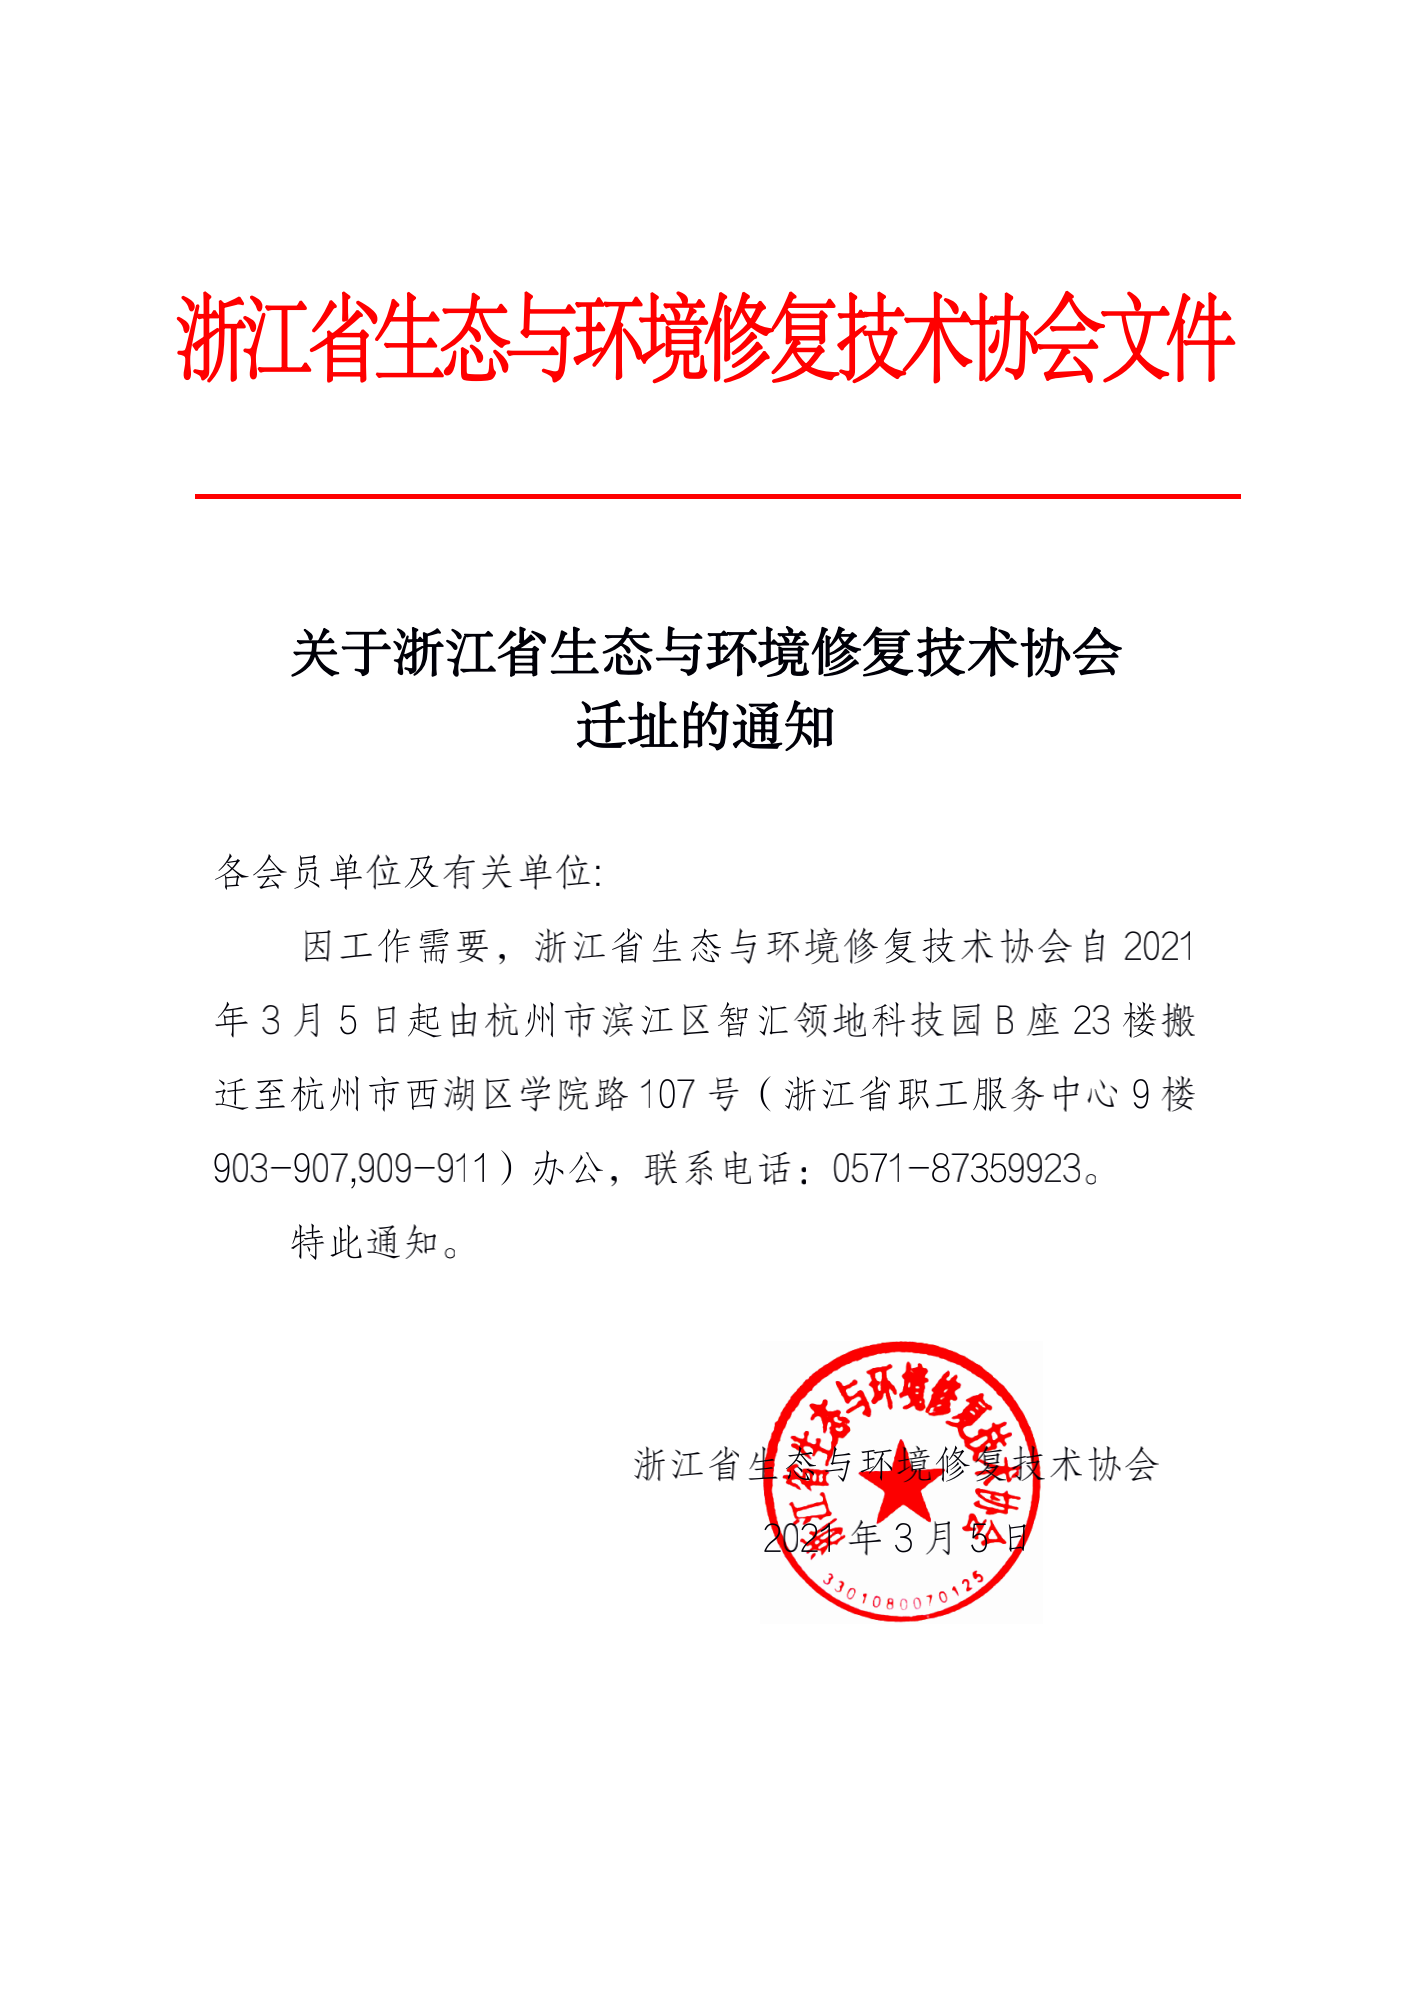 关于浙江省生态与环境修复技术协会迁址的通知_00.png